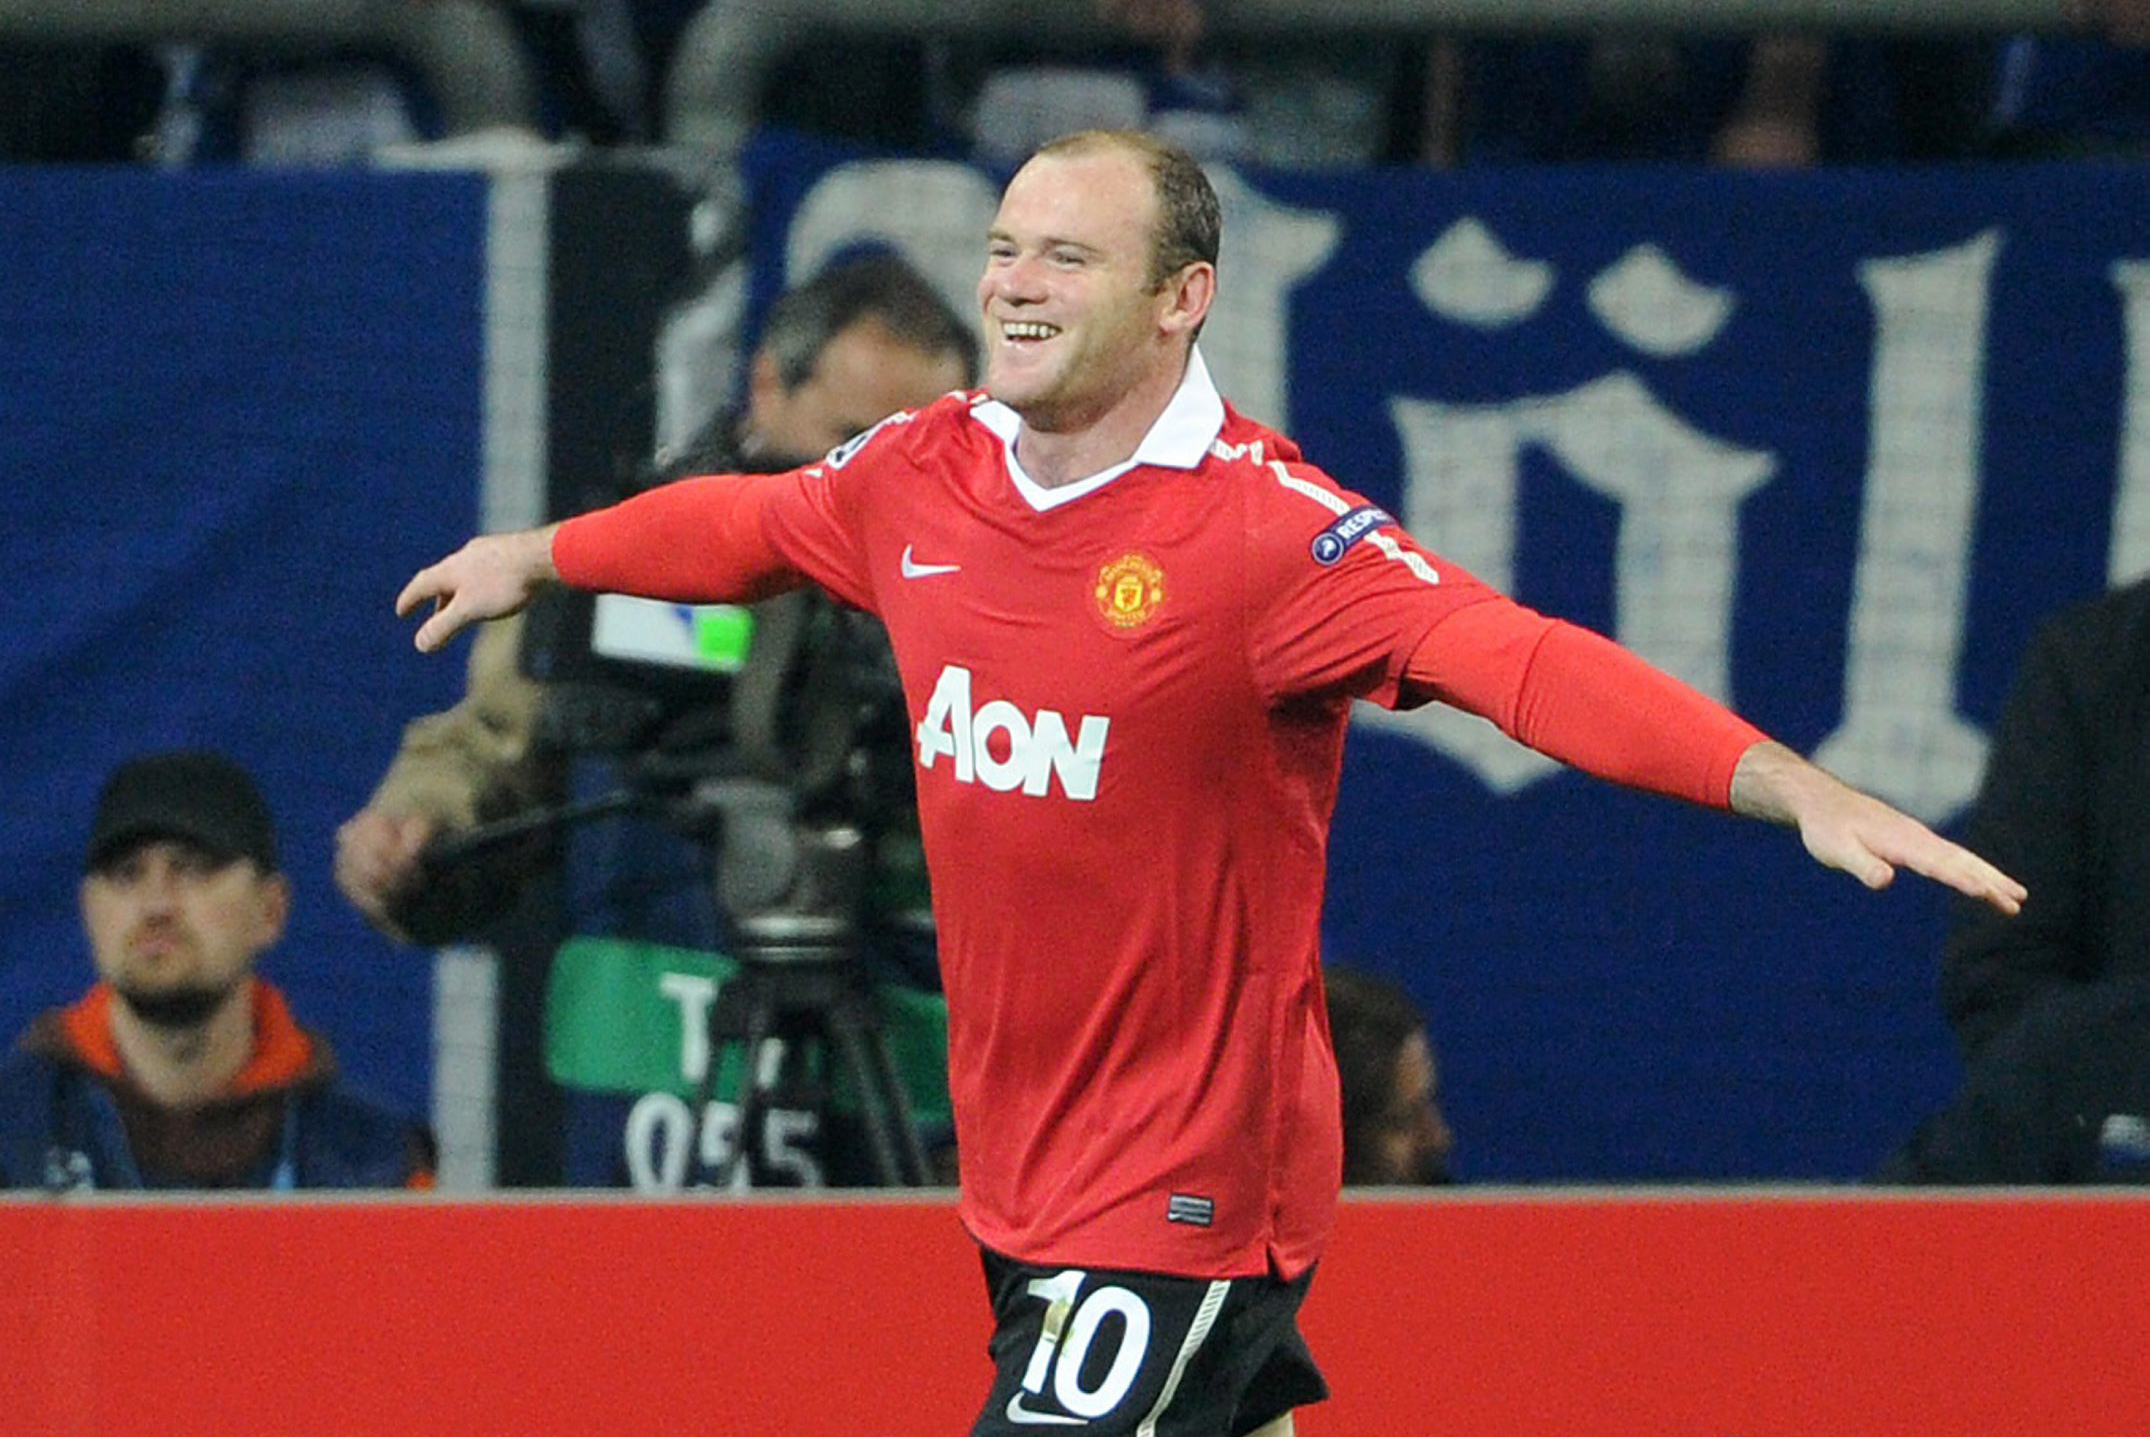 Både Rooney och United har haft en strålande säsong. Och han erkänner: "Hur fel hade jag inte?"